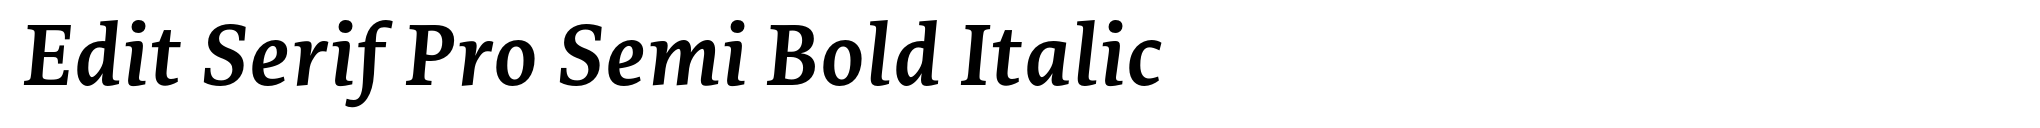 Edit Serif Pro Semi Bold Italic image